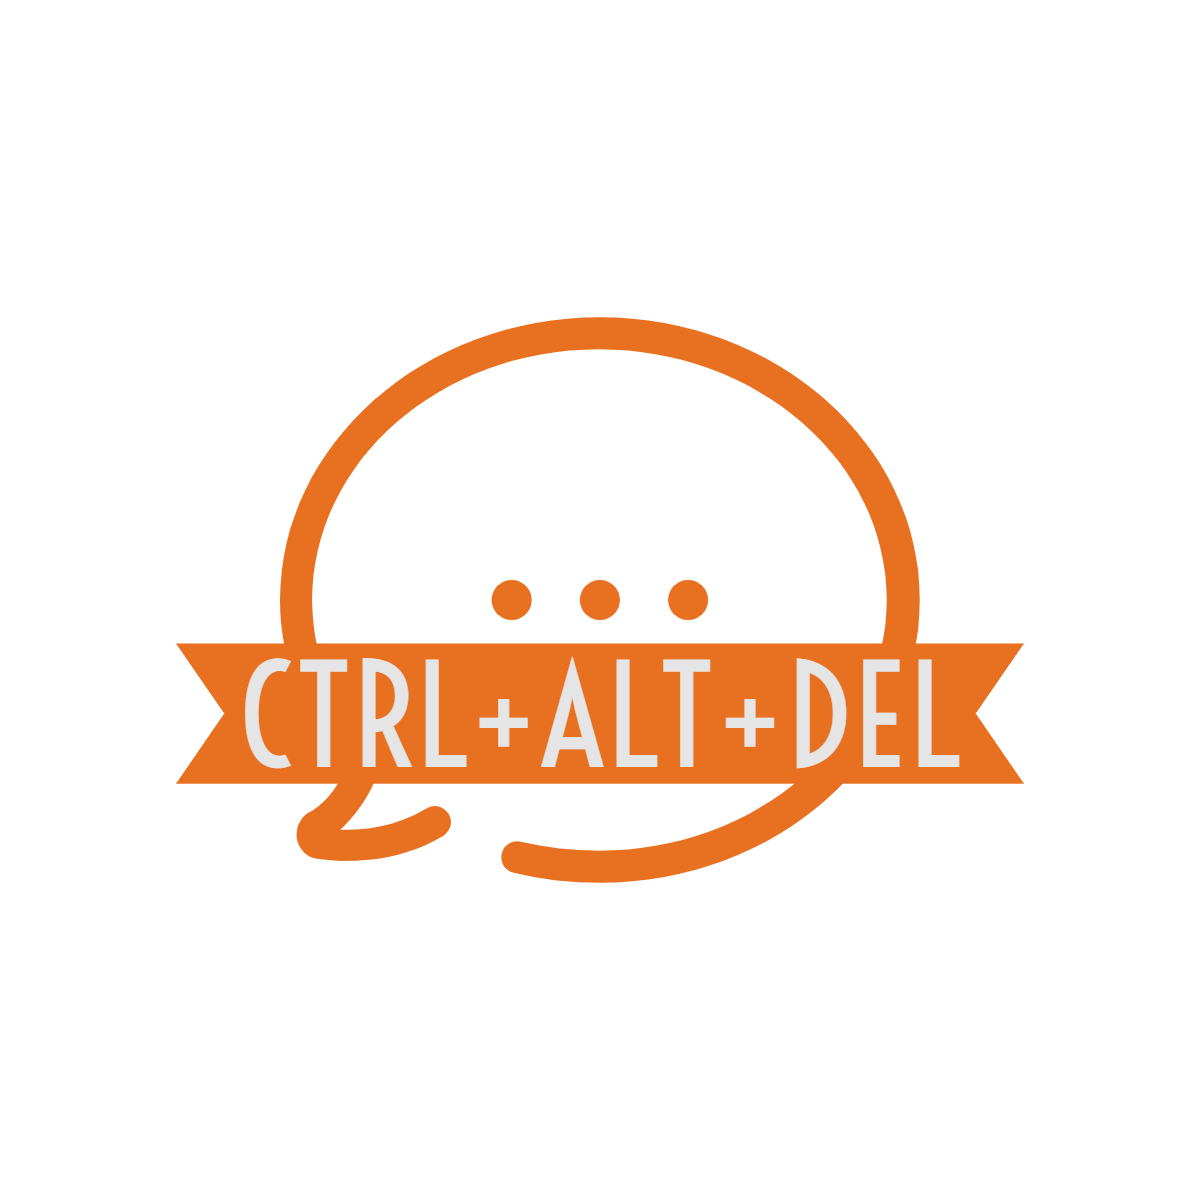 CTRL+ALT+DELETE